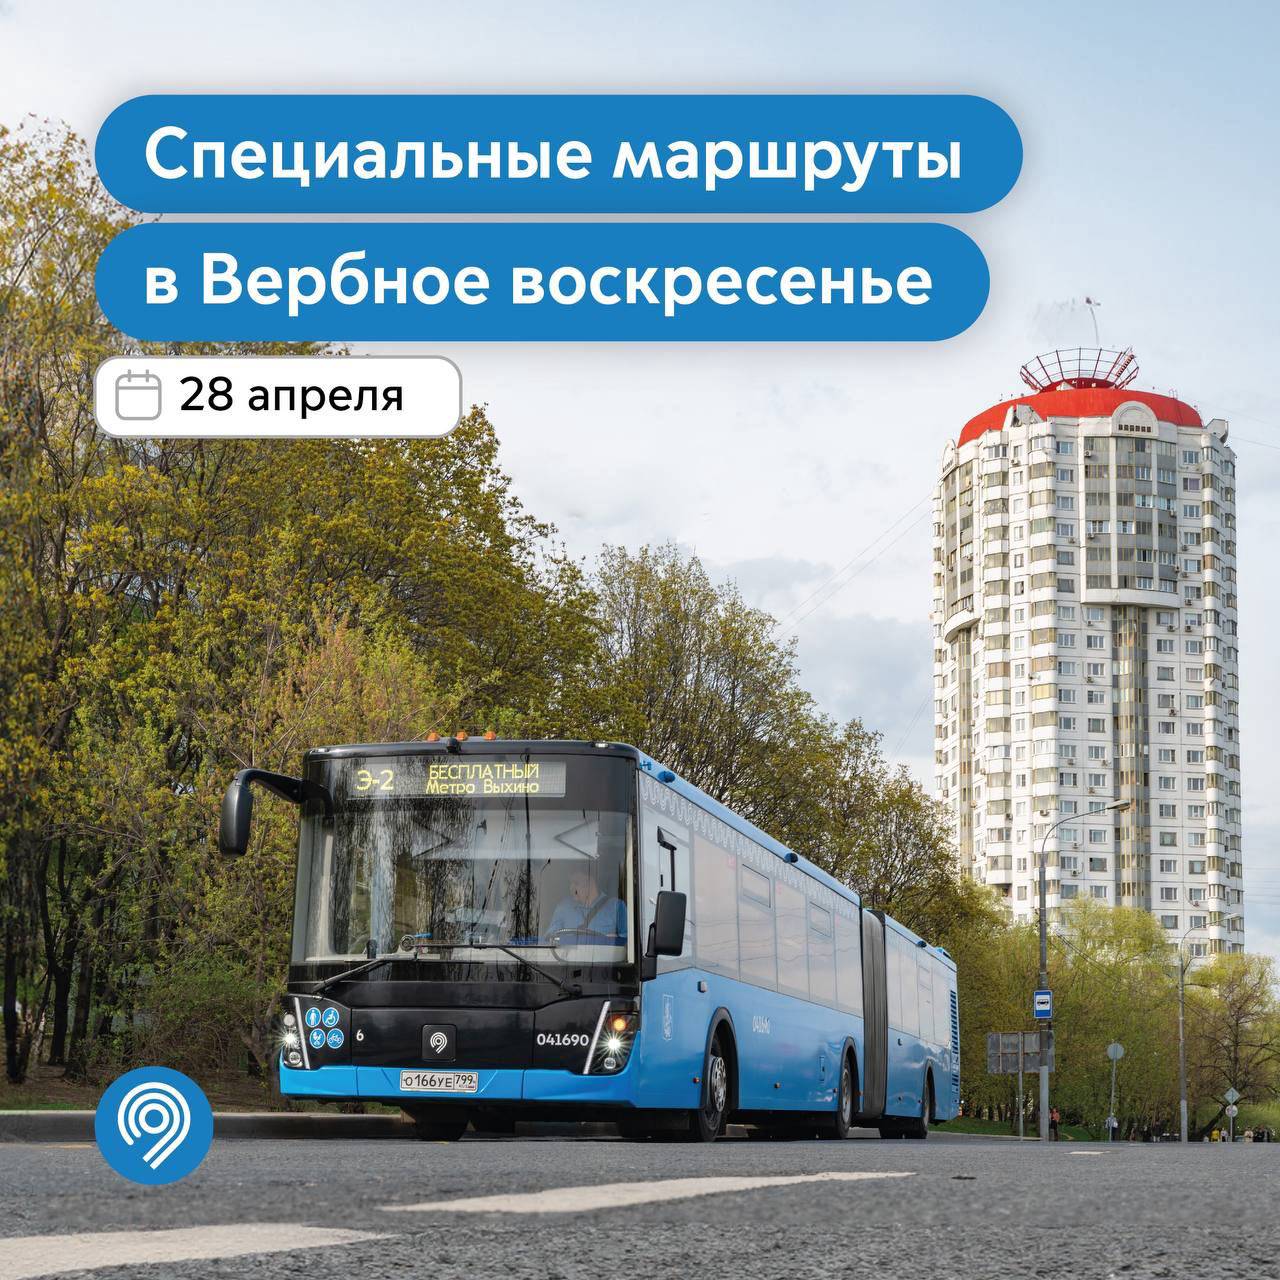 Бесплатные маршруты наземного транспорта запустят в Вербное воскресенье